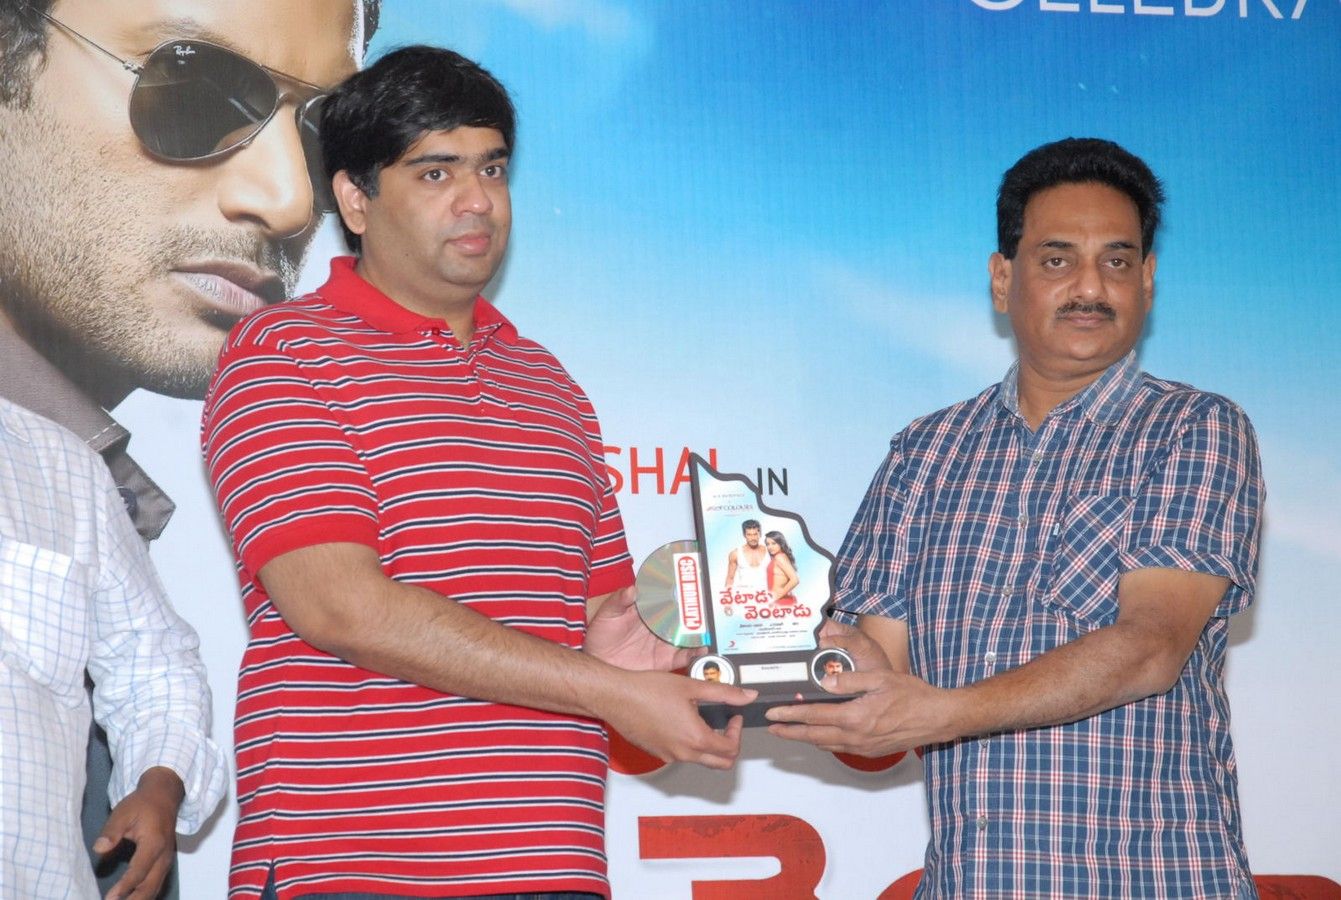 Vetadu Ventadu Movie Platinum Disc Function Pictures | Picture 367247